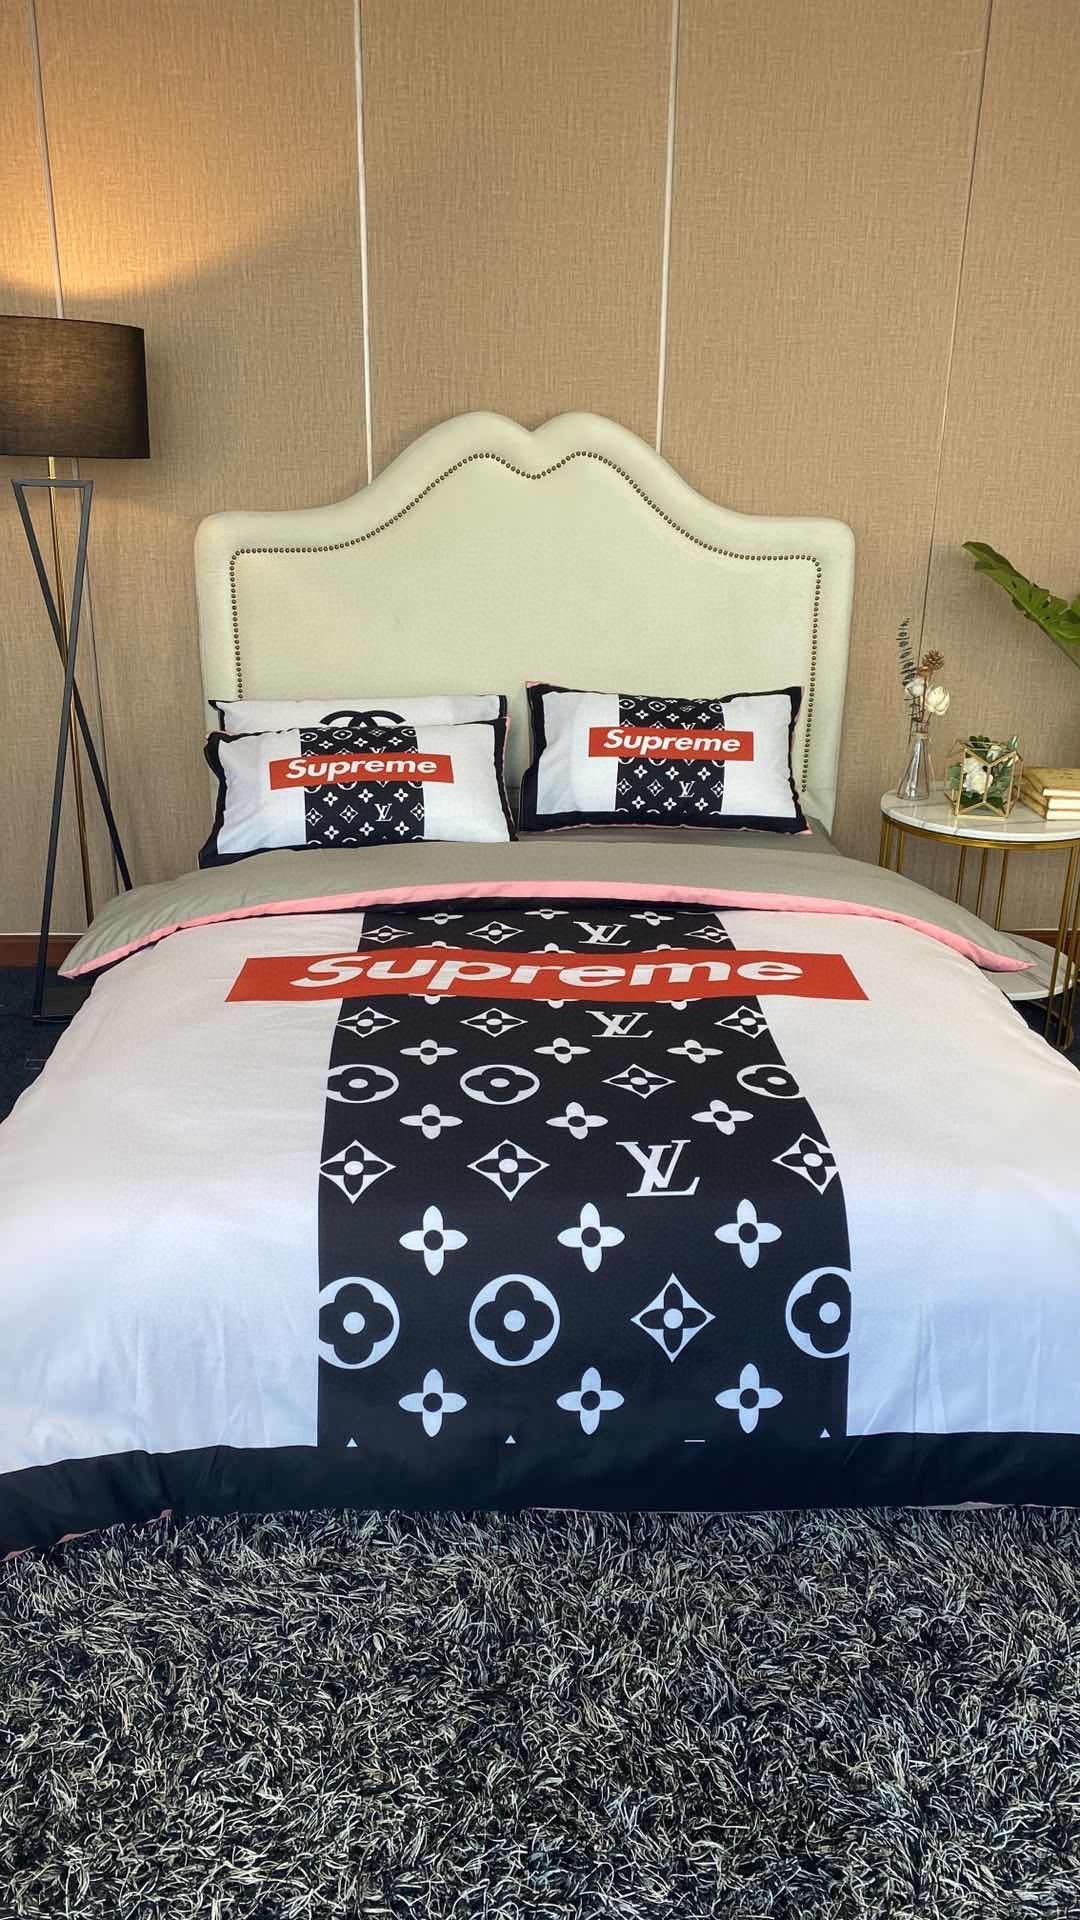 LV Sp Type 08 Bedding Sets Duvet Cover Lv Bedroom Sets Luxury Brand Bedding